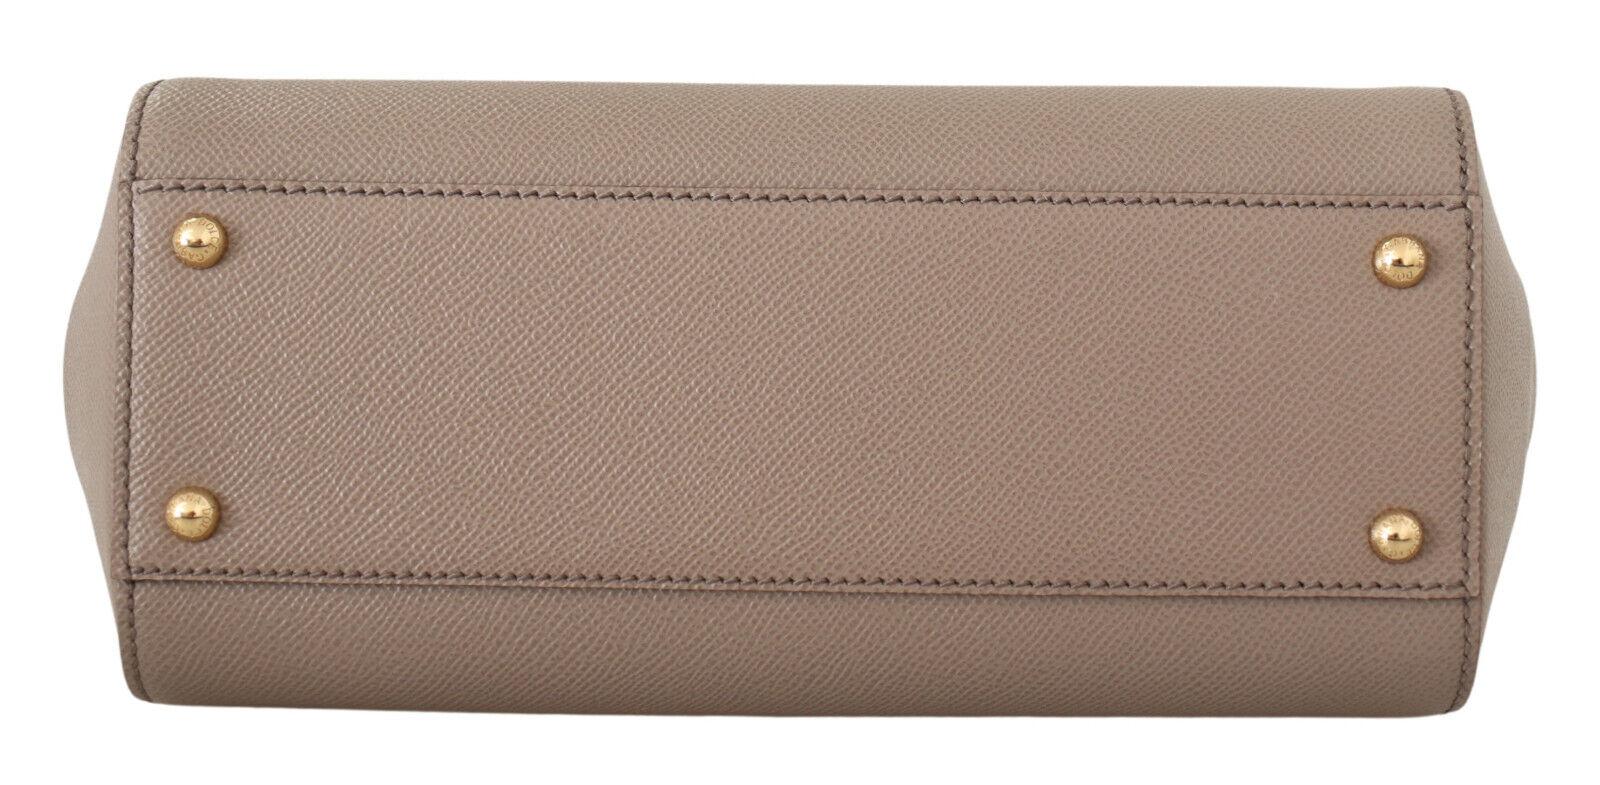 Dolce & Gabbana Beige Brown Leather Sicily Handbag Shoulder Top Handle Bag  1